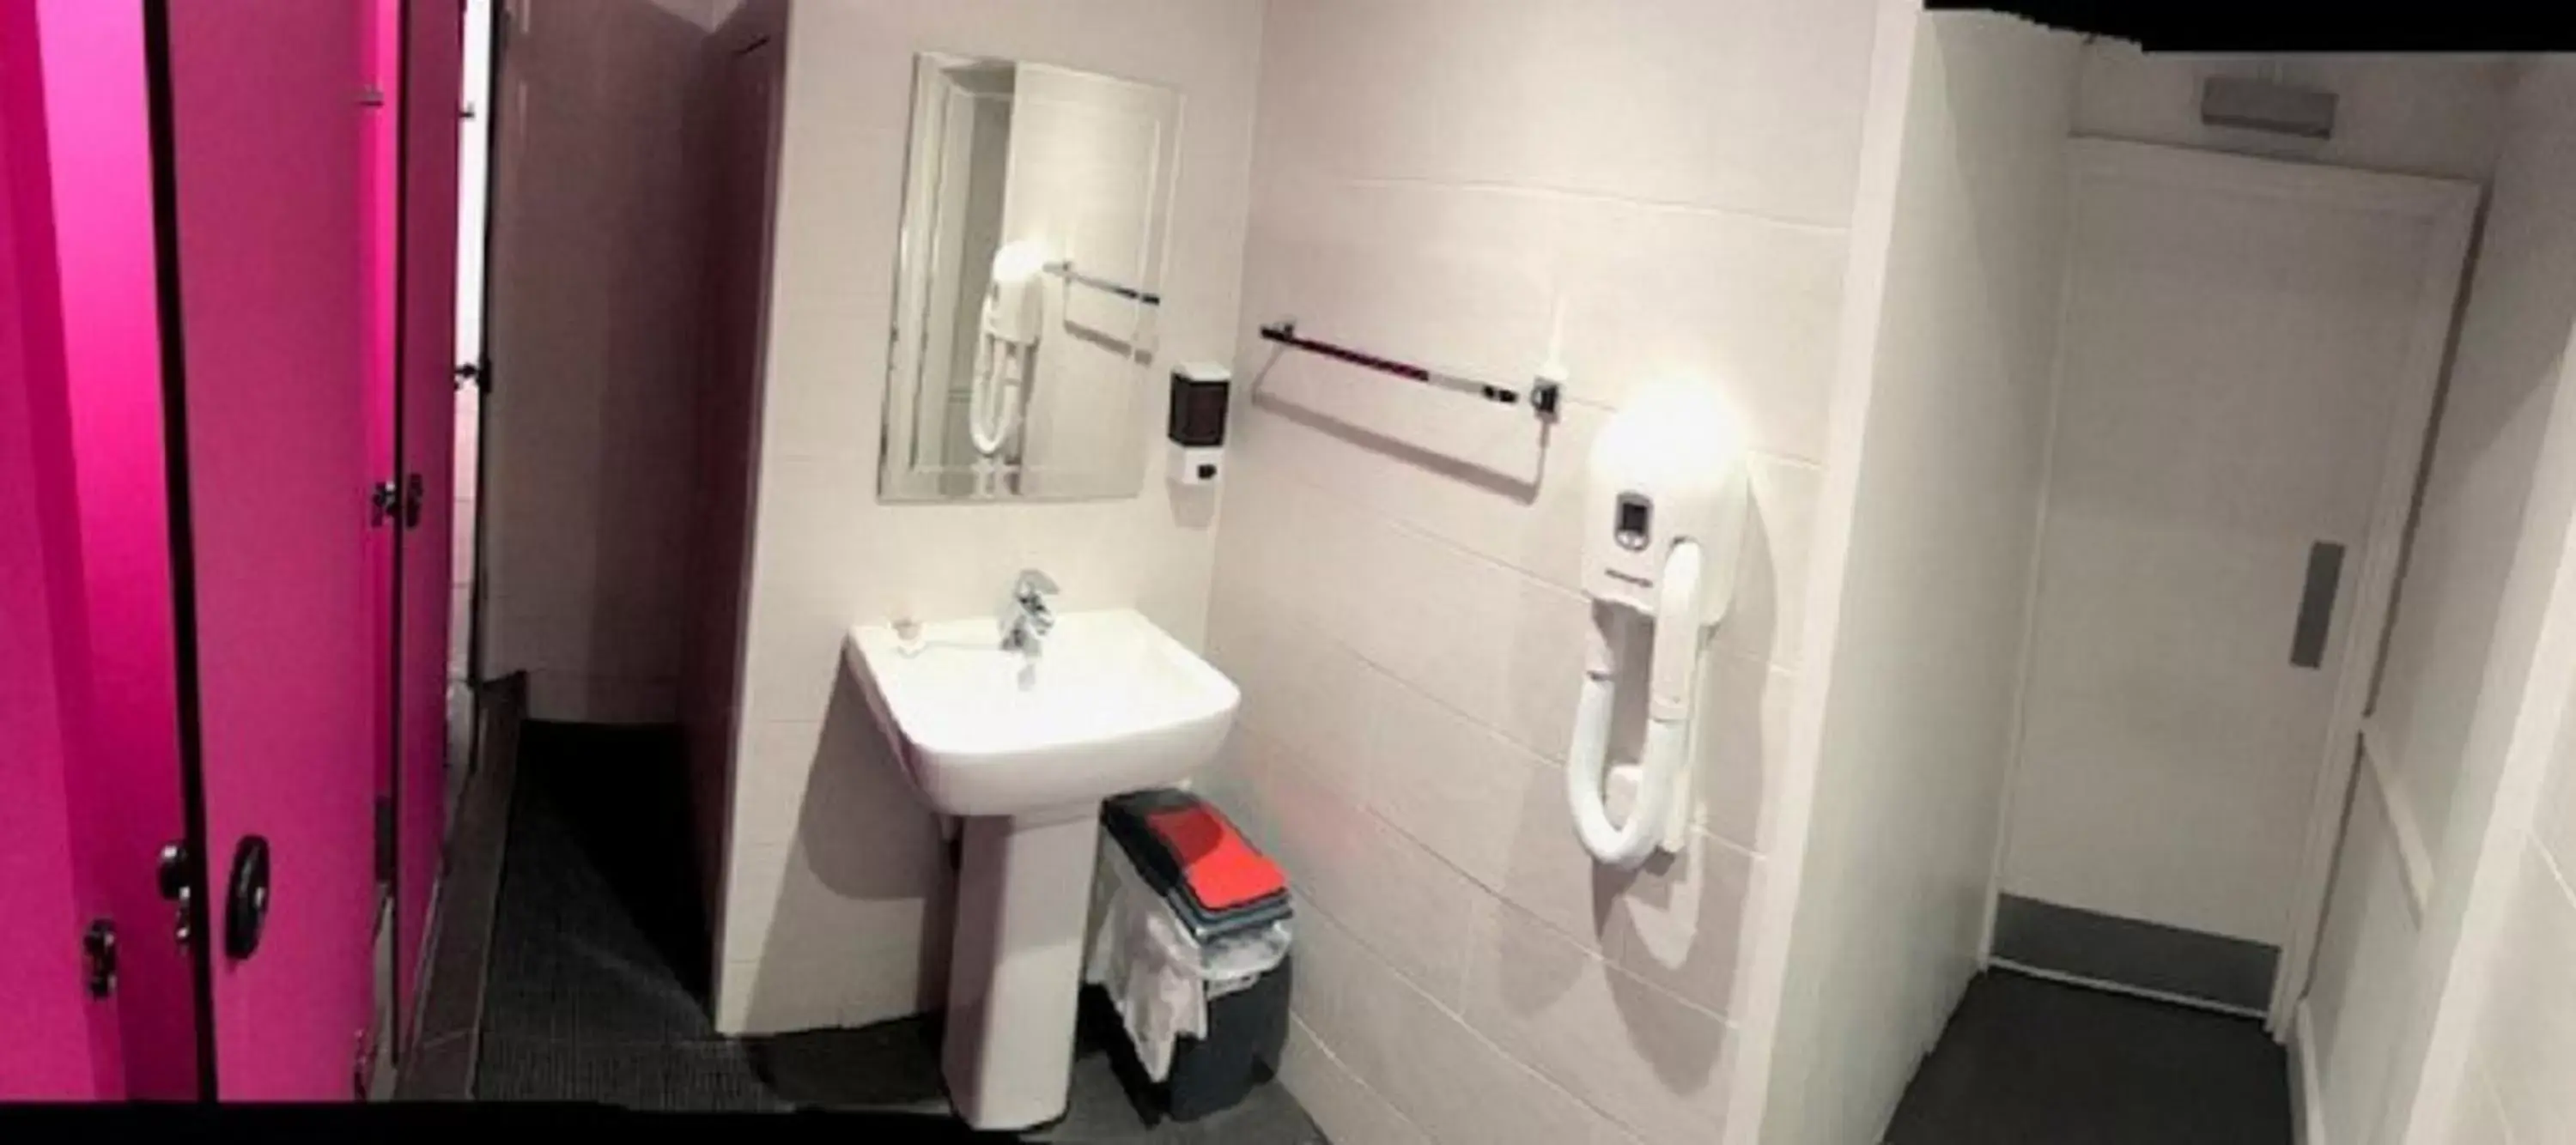 Area and facilities, Bathroom in Smart Hyde Park Inn Hostel